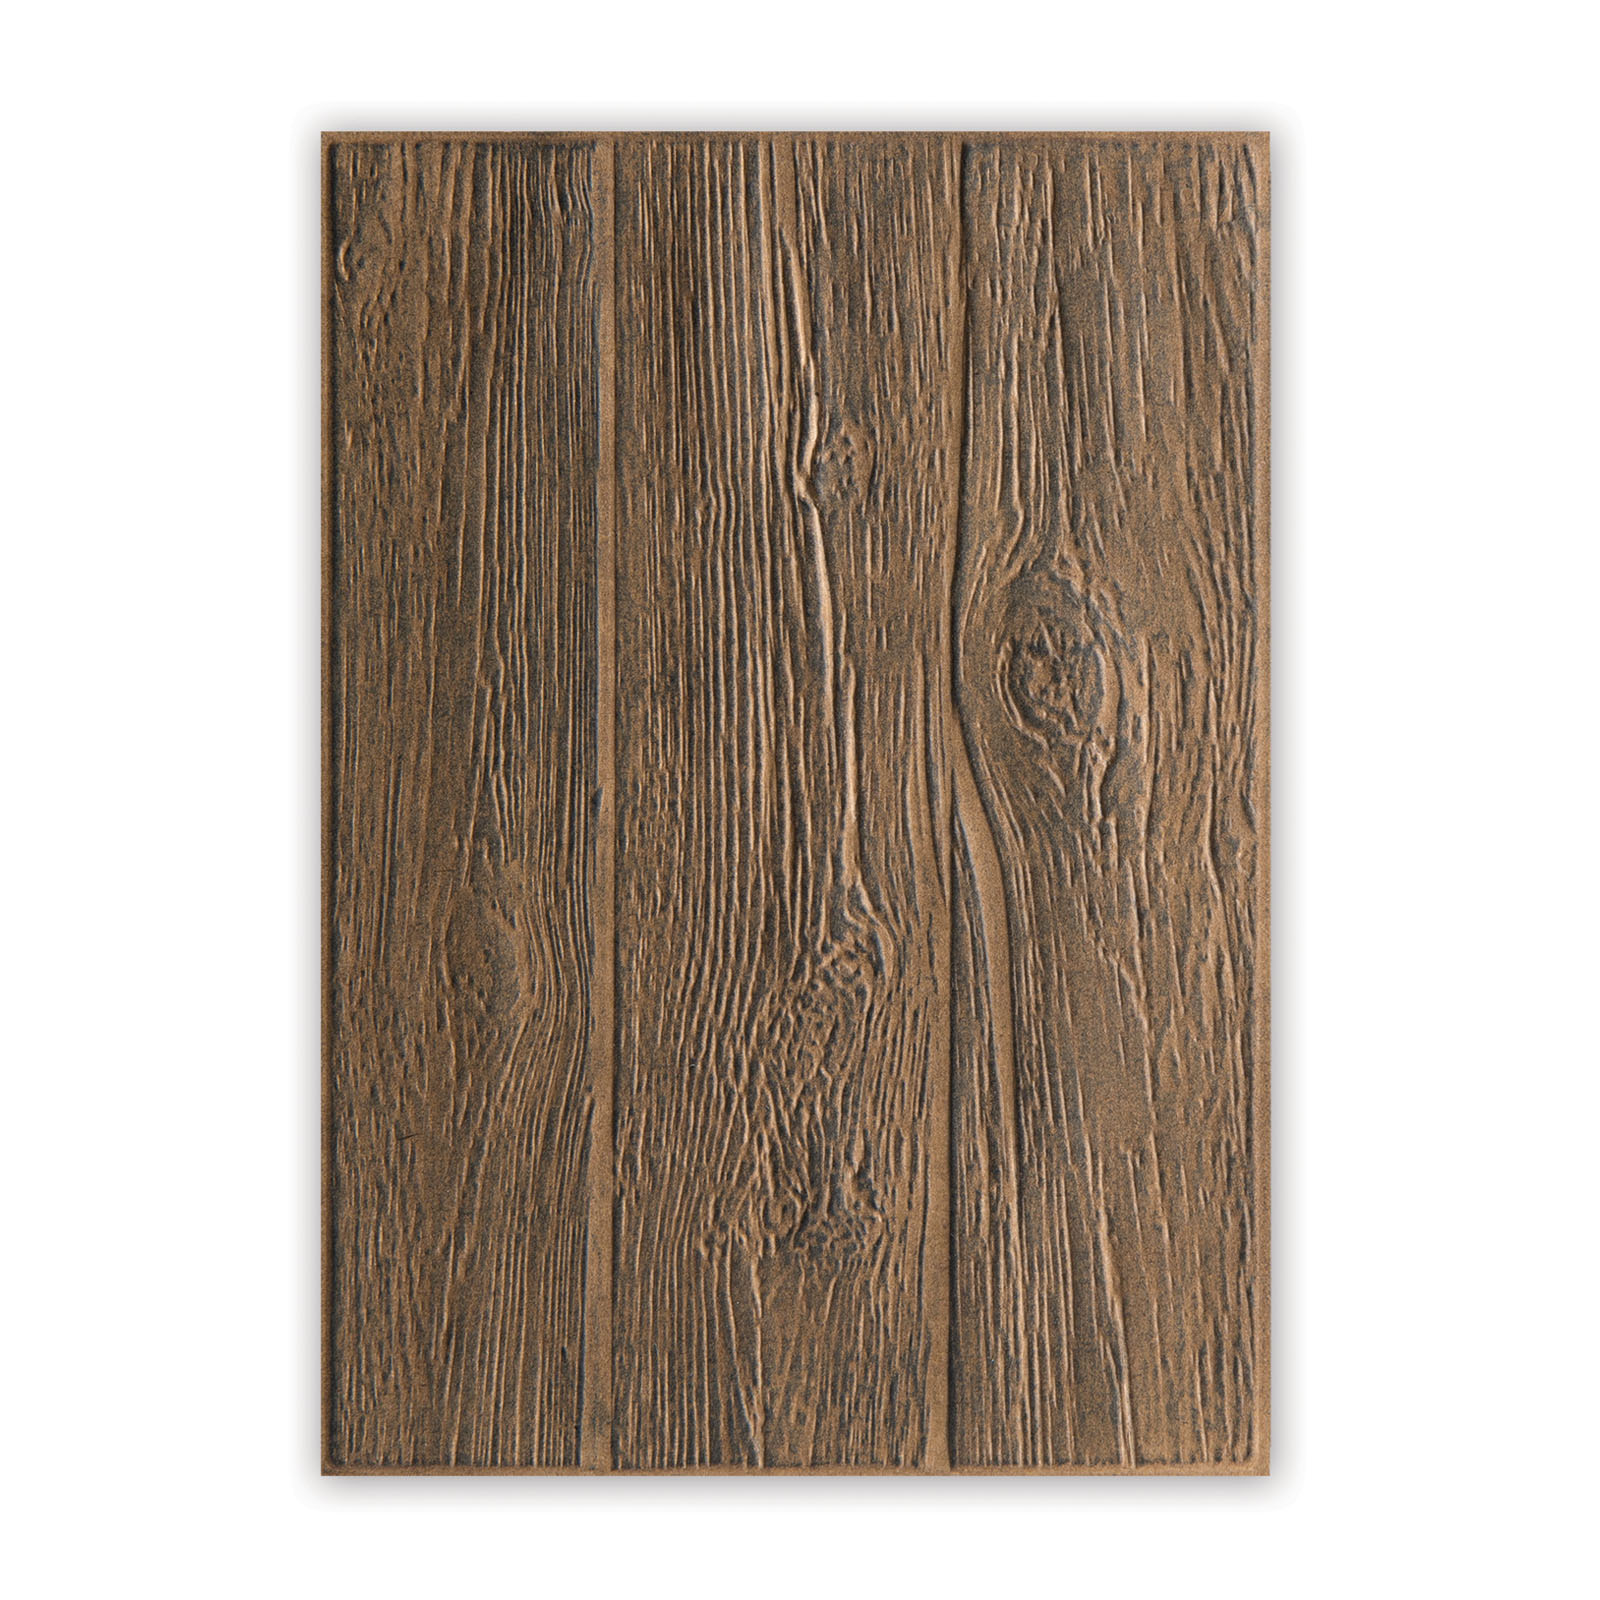 Sizzix • Carpeta de madera con textura 3D que se desvanece por Tim Holtz